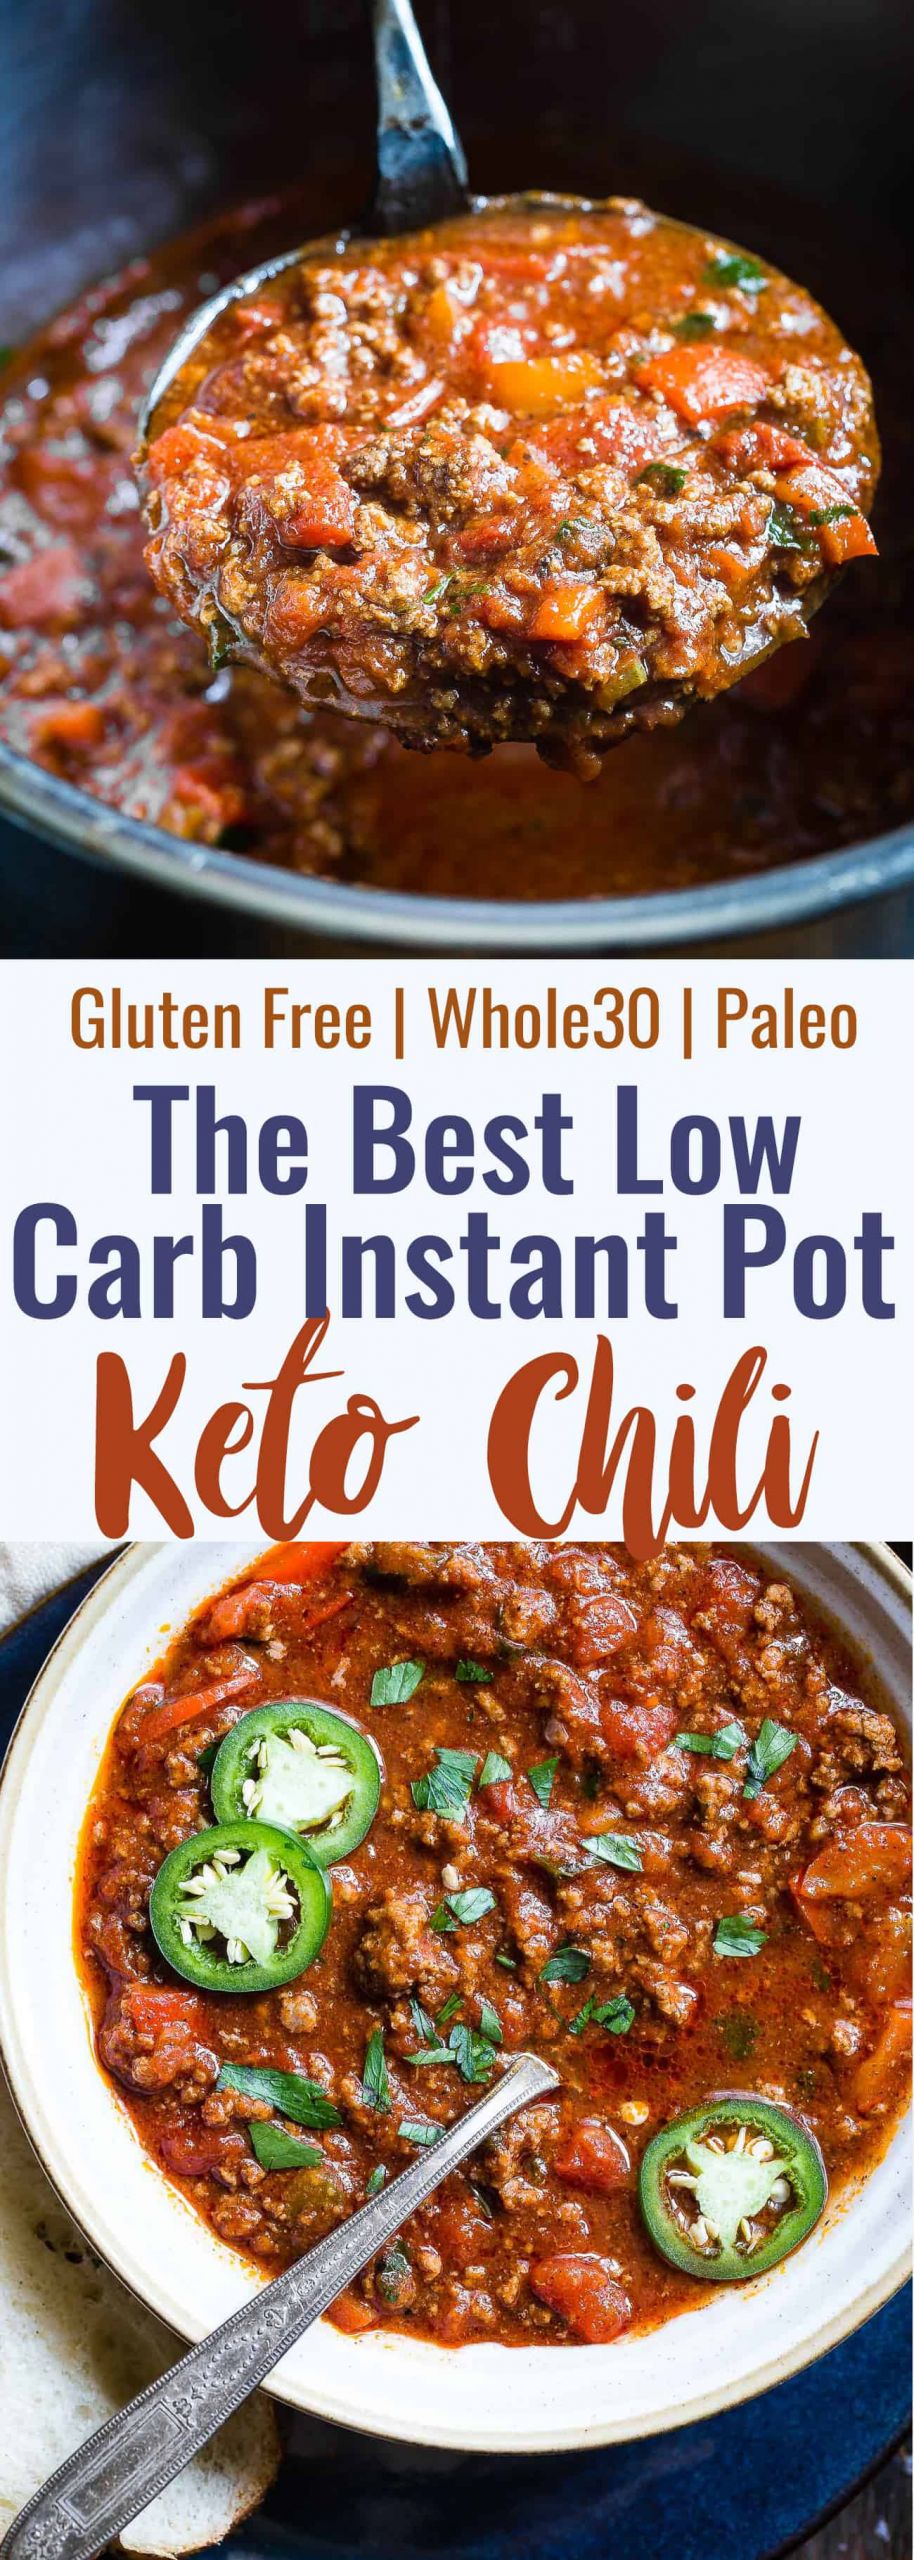 Instant Pot Keto Chili
 No Bean Whole30 Keto Chili in the Instant Pot Paleo